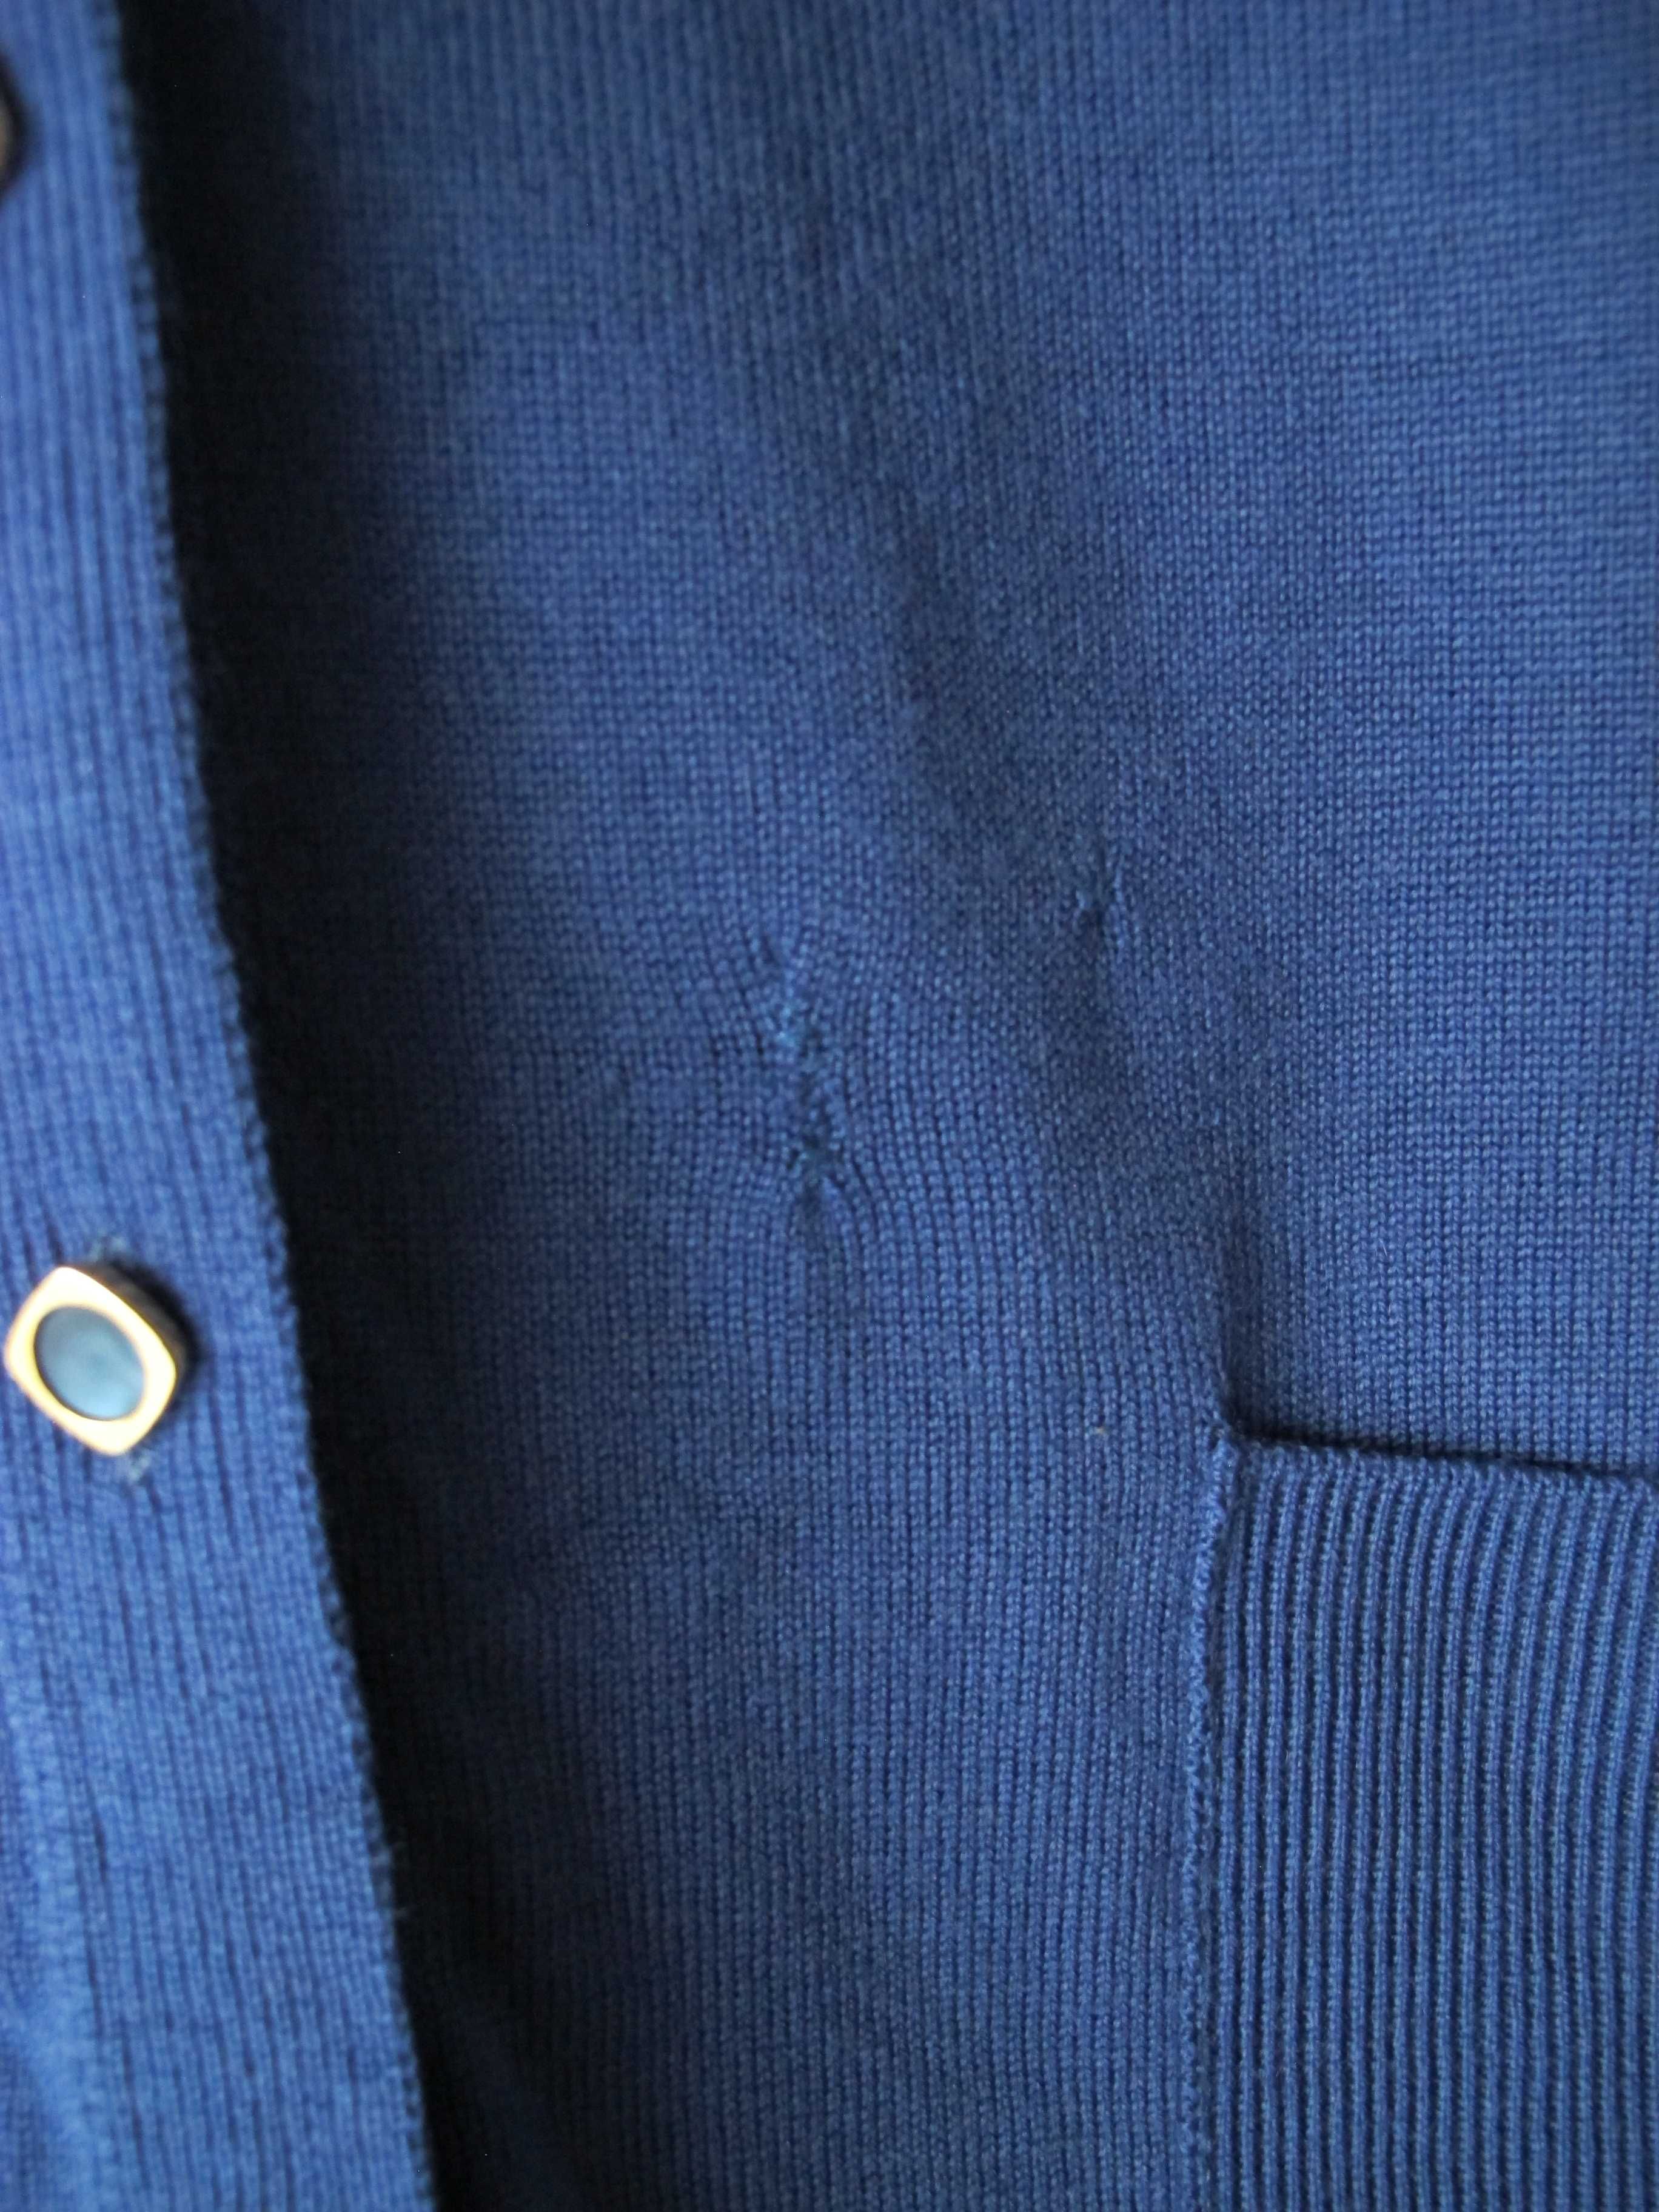 sweter damski 48/50 wełna niebieski zapinany kieszenie